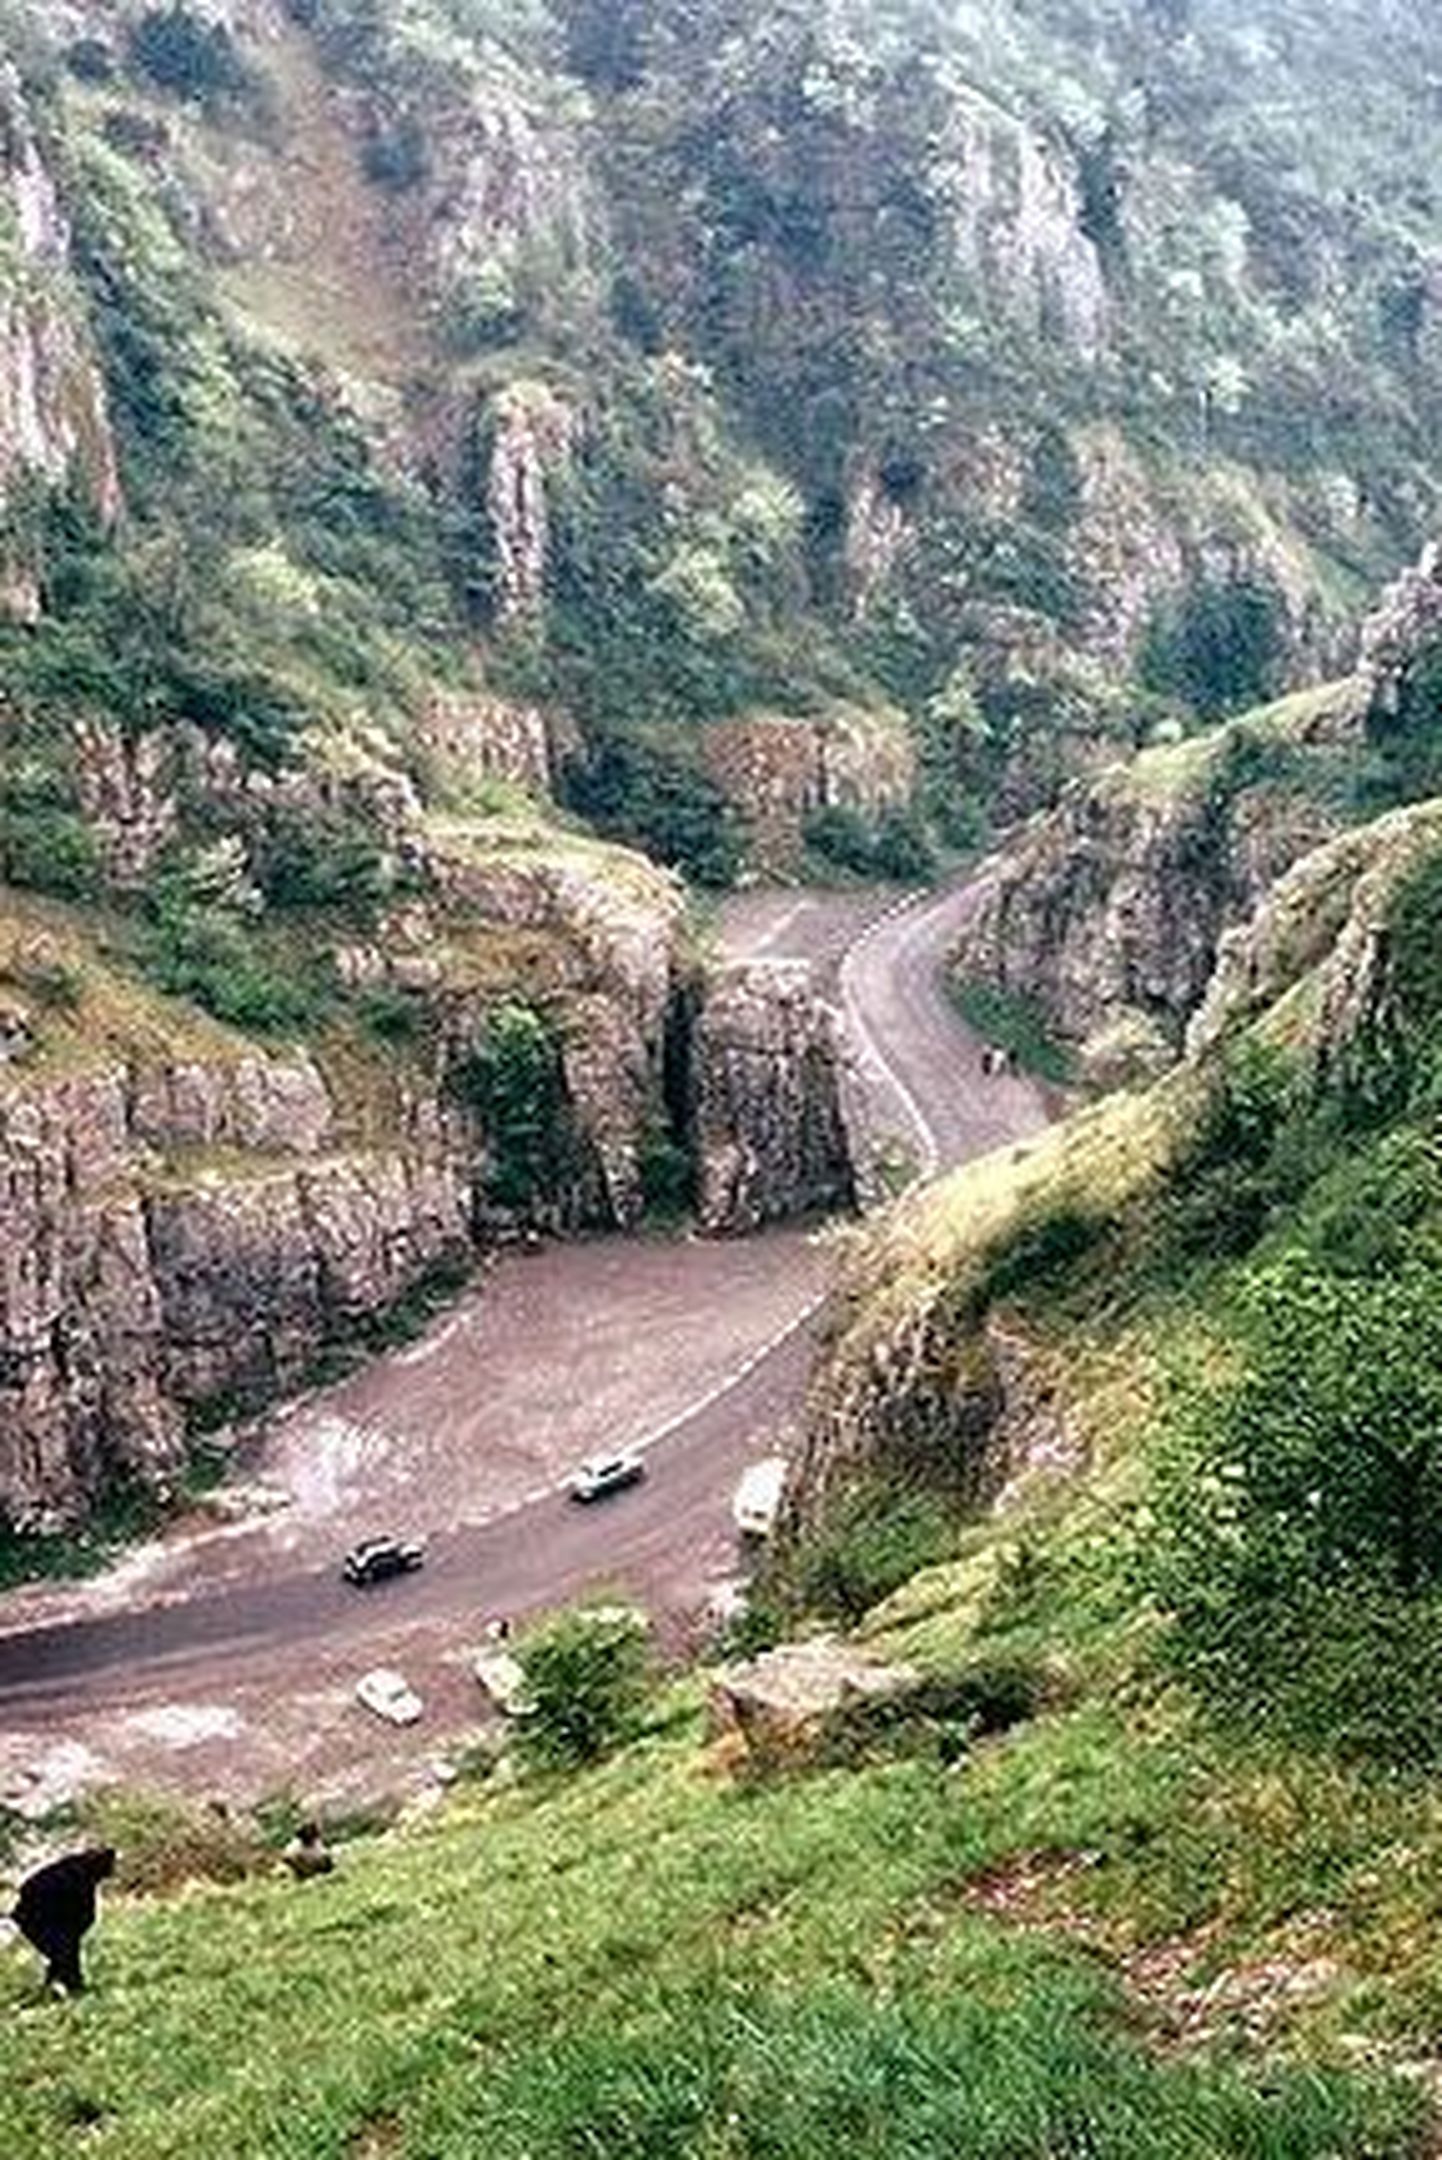 Cheddari kuristiku koobastes leidsid peavarju 14 700 aasta tagasi Briti saartele jõudnud kütid-korilased